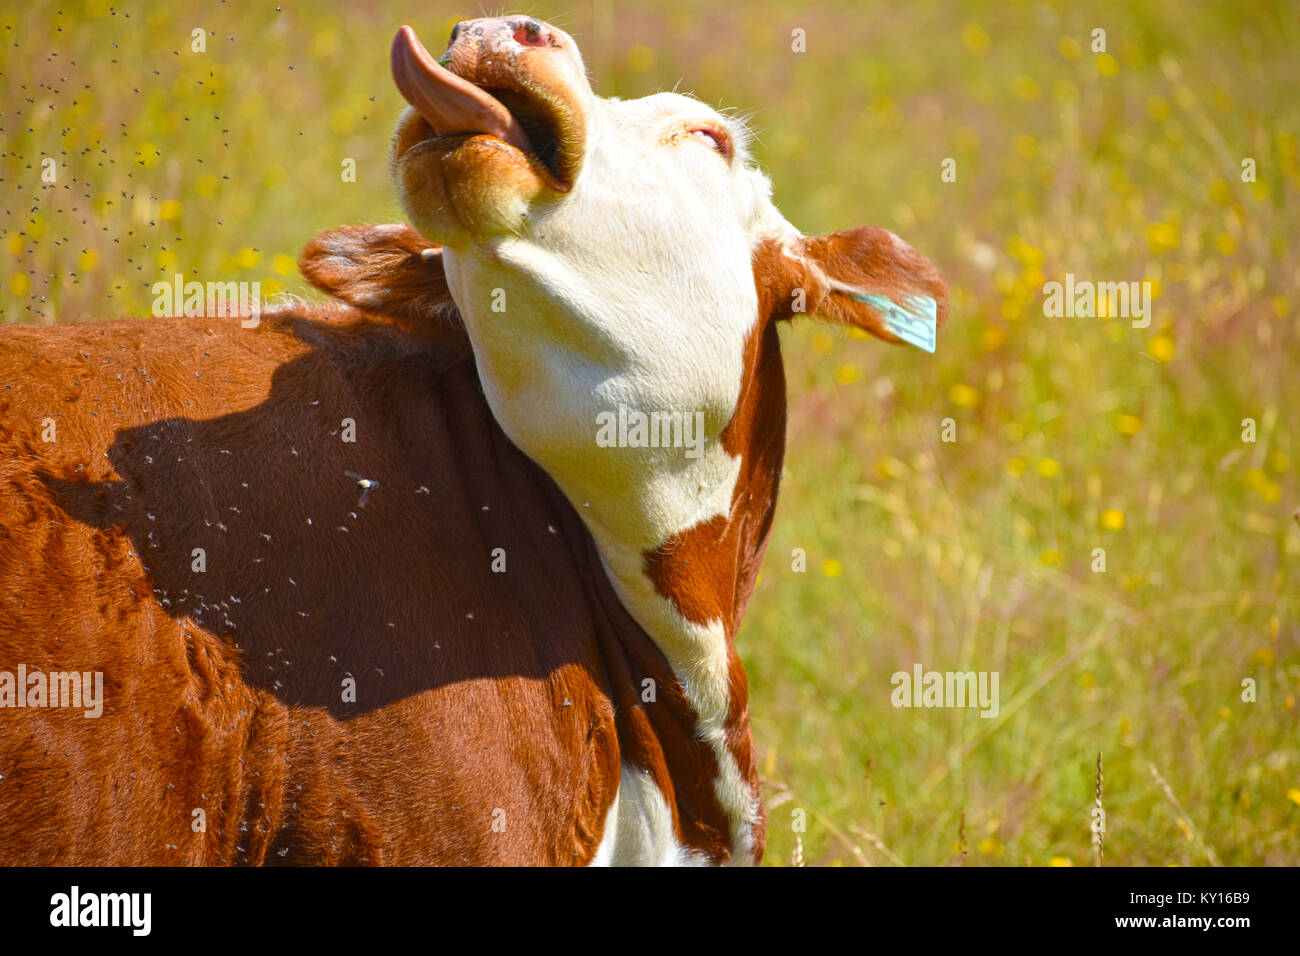 Sticking out tongue vache dans un champ de pissenlit avec des milliers de mouches irritant elle. La vache humoristique semble lever les yeux. Banque D'Images